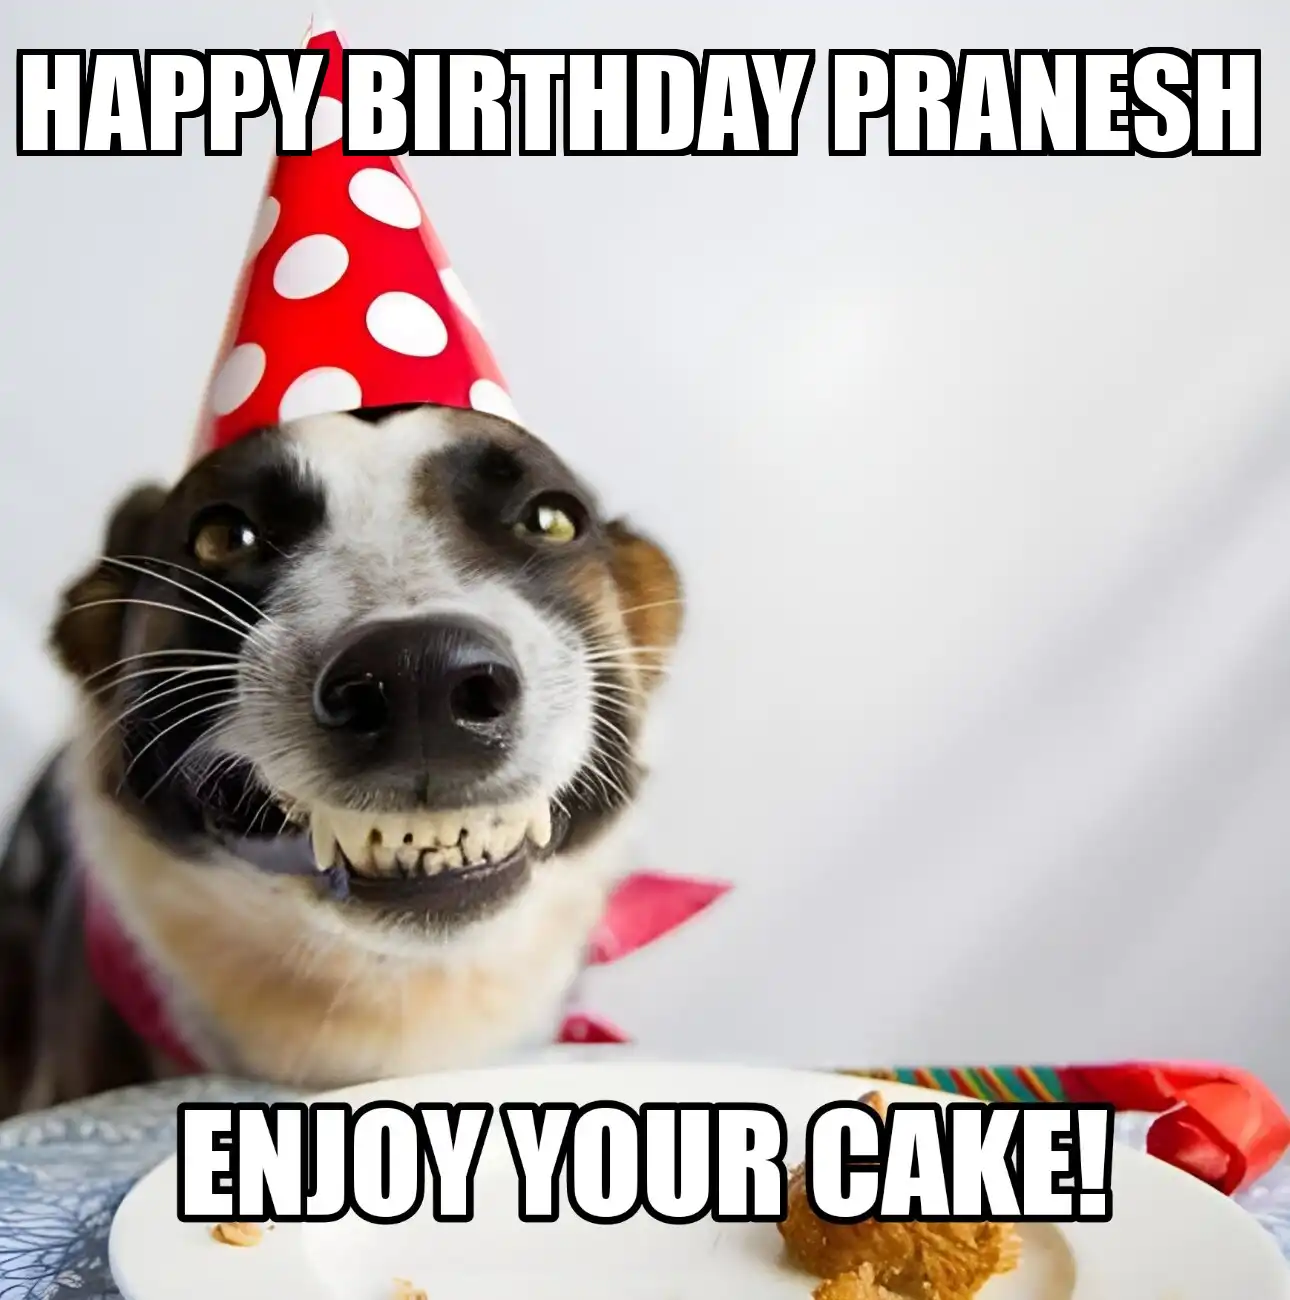 Happy Birthday Pranesh Enjoy Your Cake Dog Meme